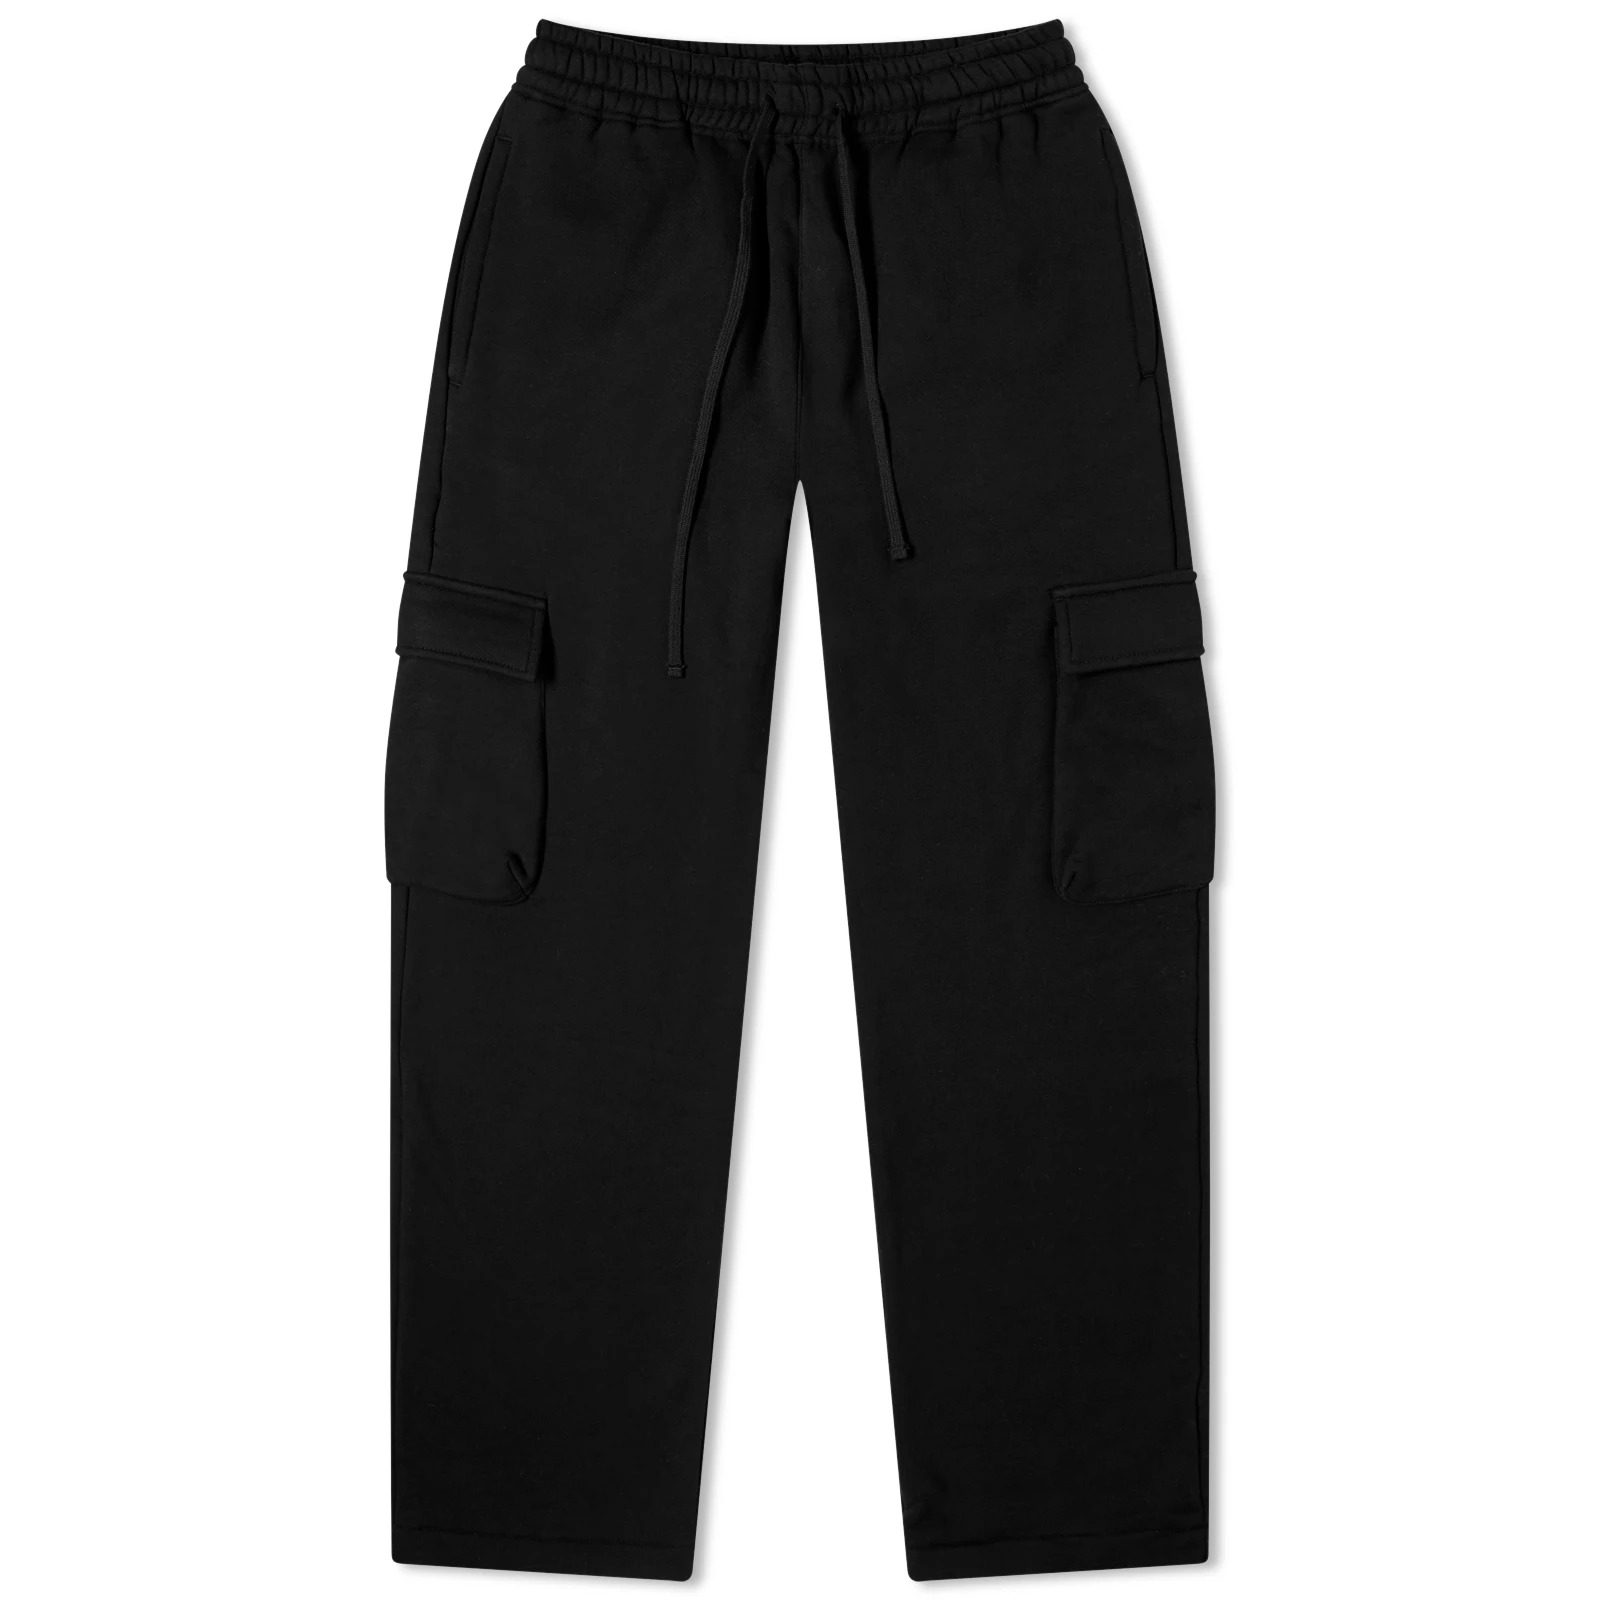 Спортивные брюки John Elliott Corpus Cargo Sweat, черный зауженные брюки для отдыха off white john elliott